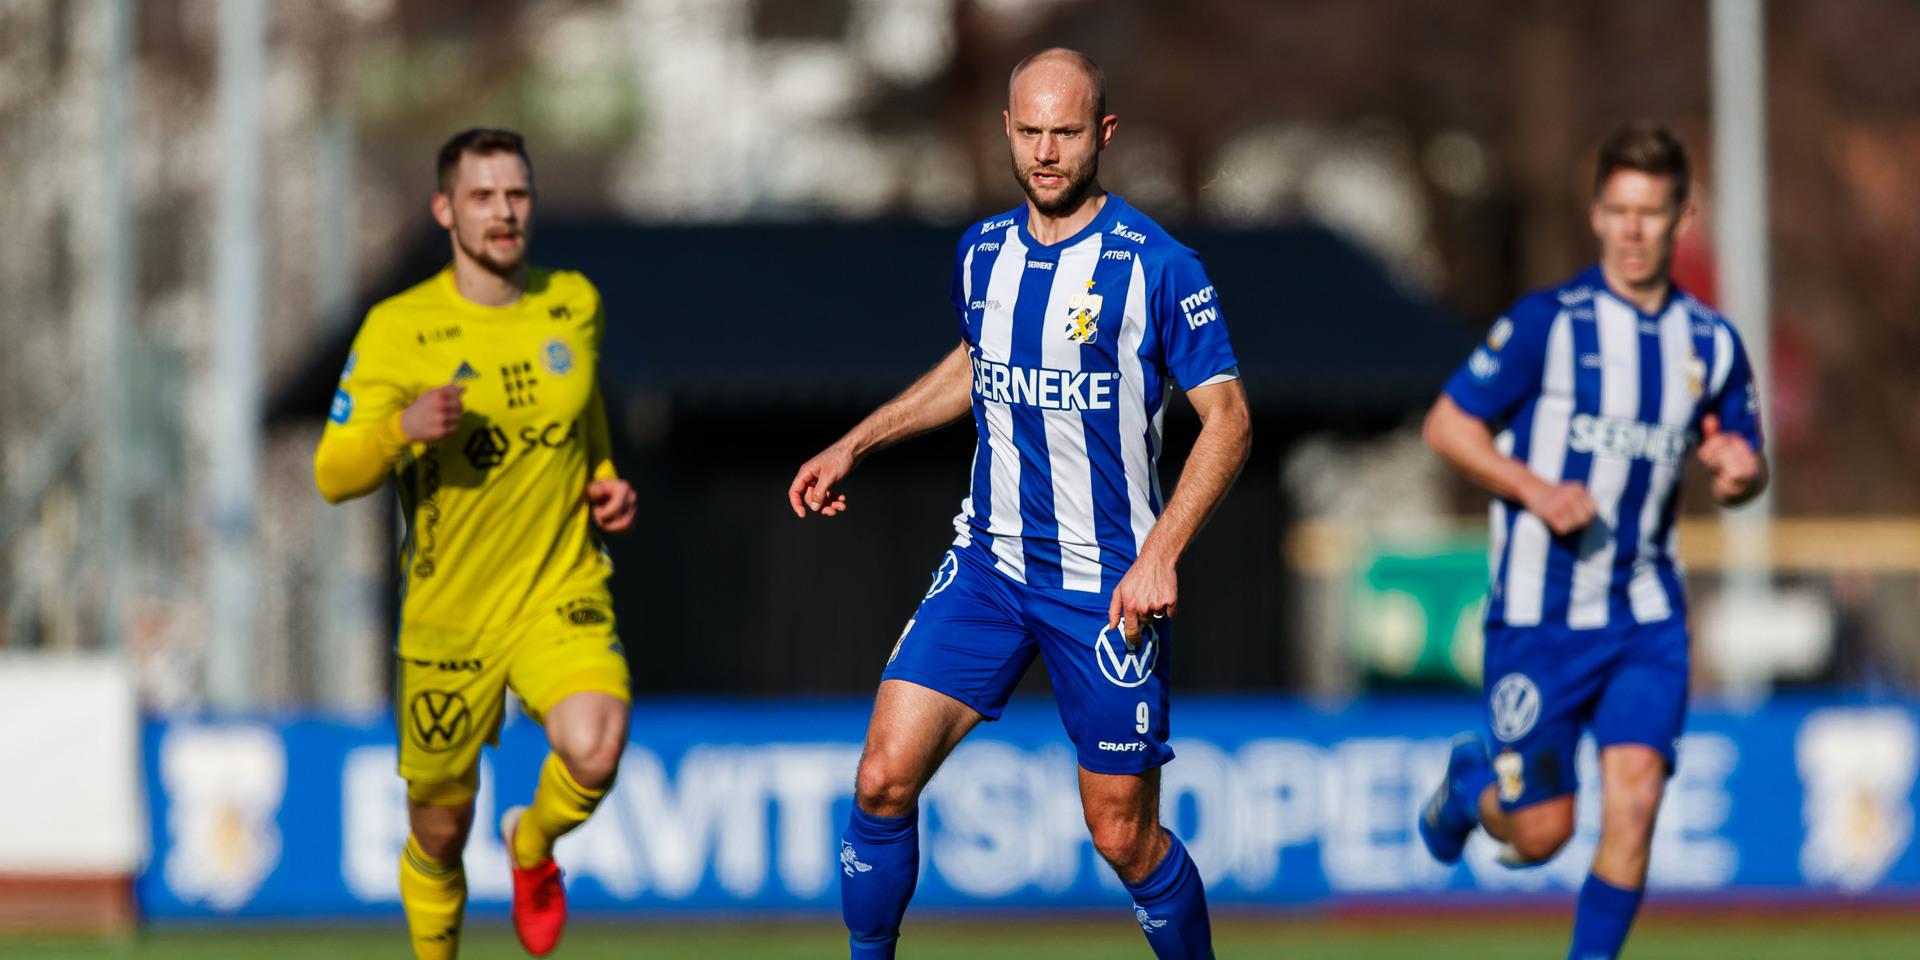 Efter sammanlagt 277 A-lagsmatcher i IFK Göteborg lämnar Robin Söder IFK Göteborg efter den här säsongen. Han kommer att avtackas i samband med sista hemmamatchen nu på söndag mot Östersund.